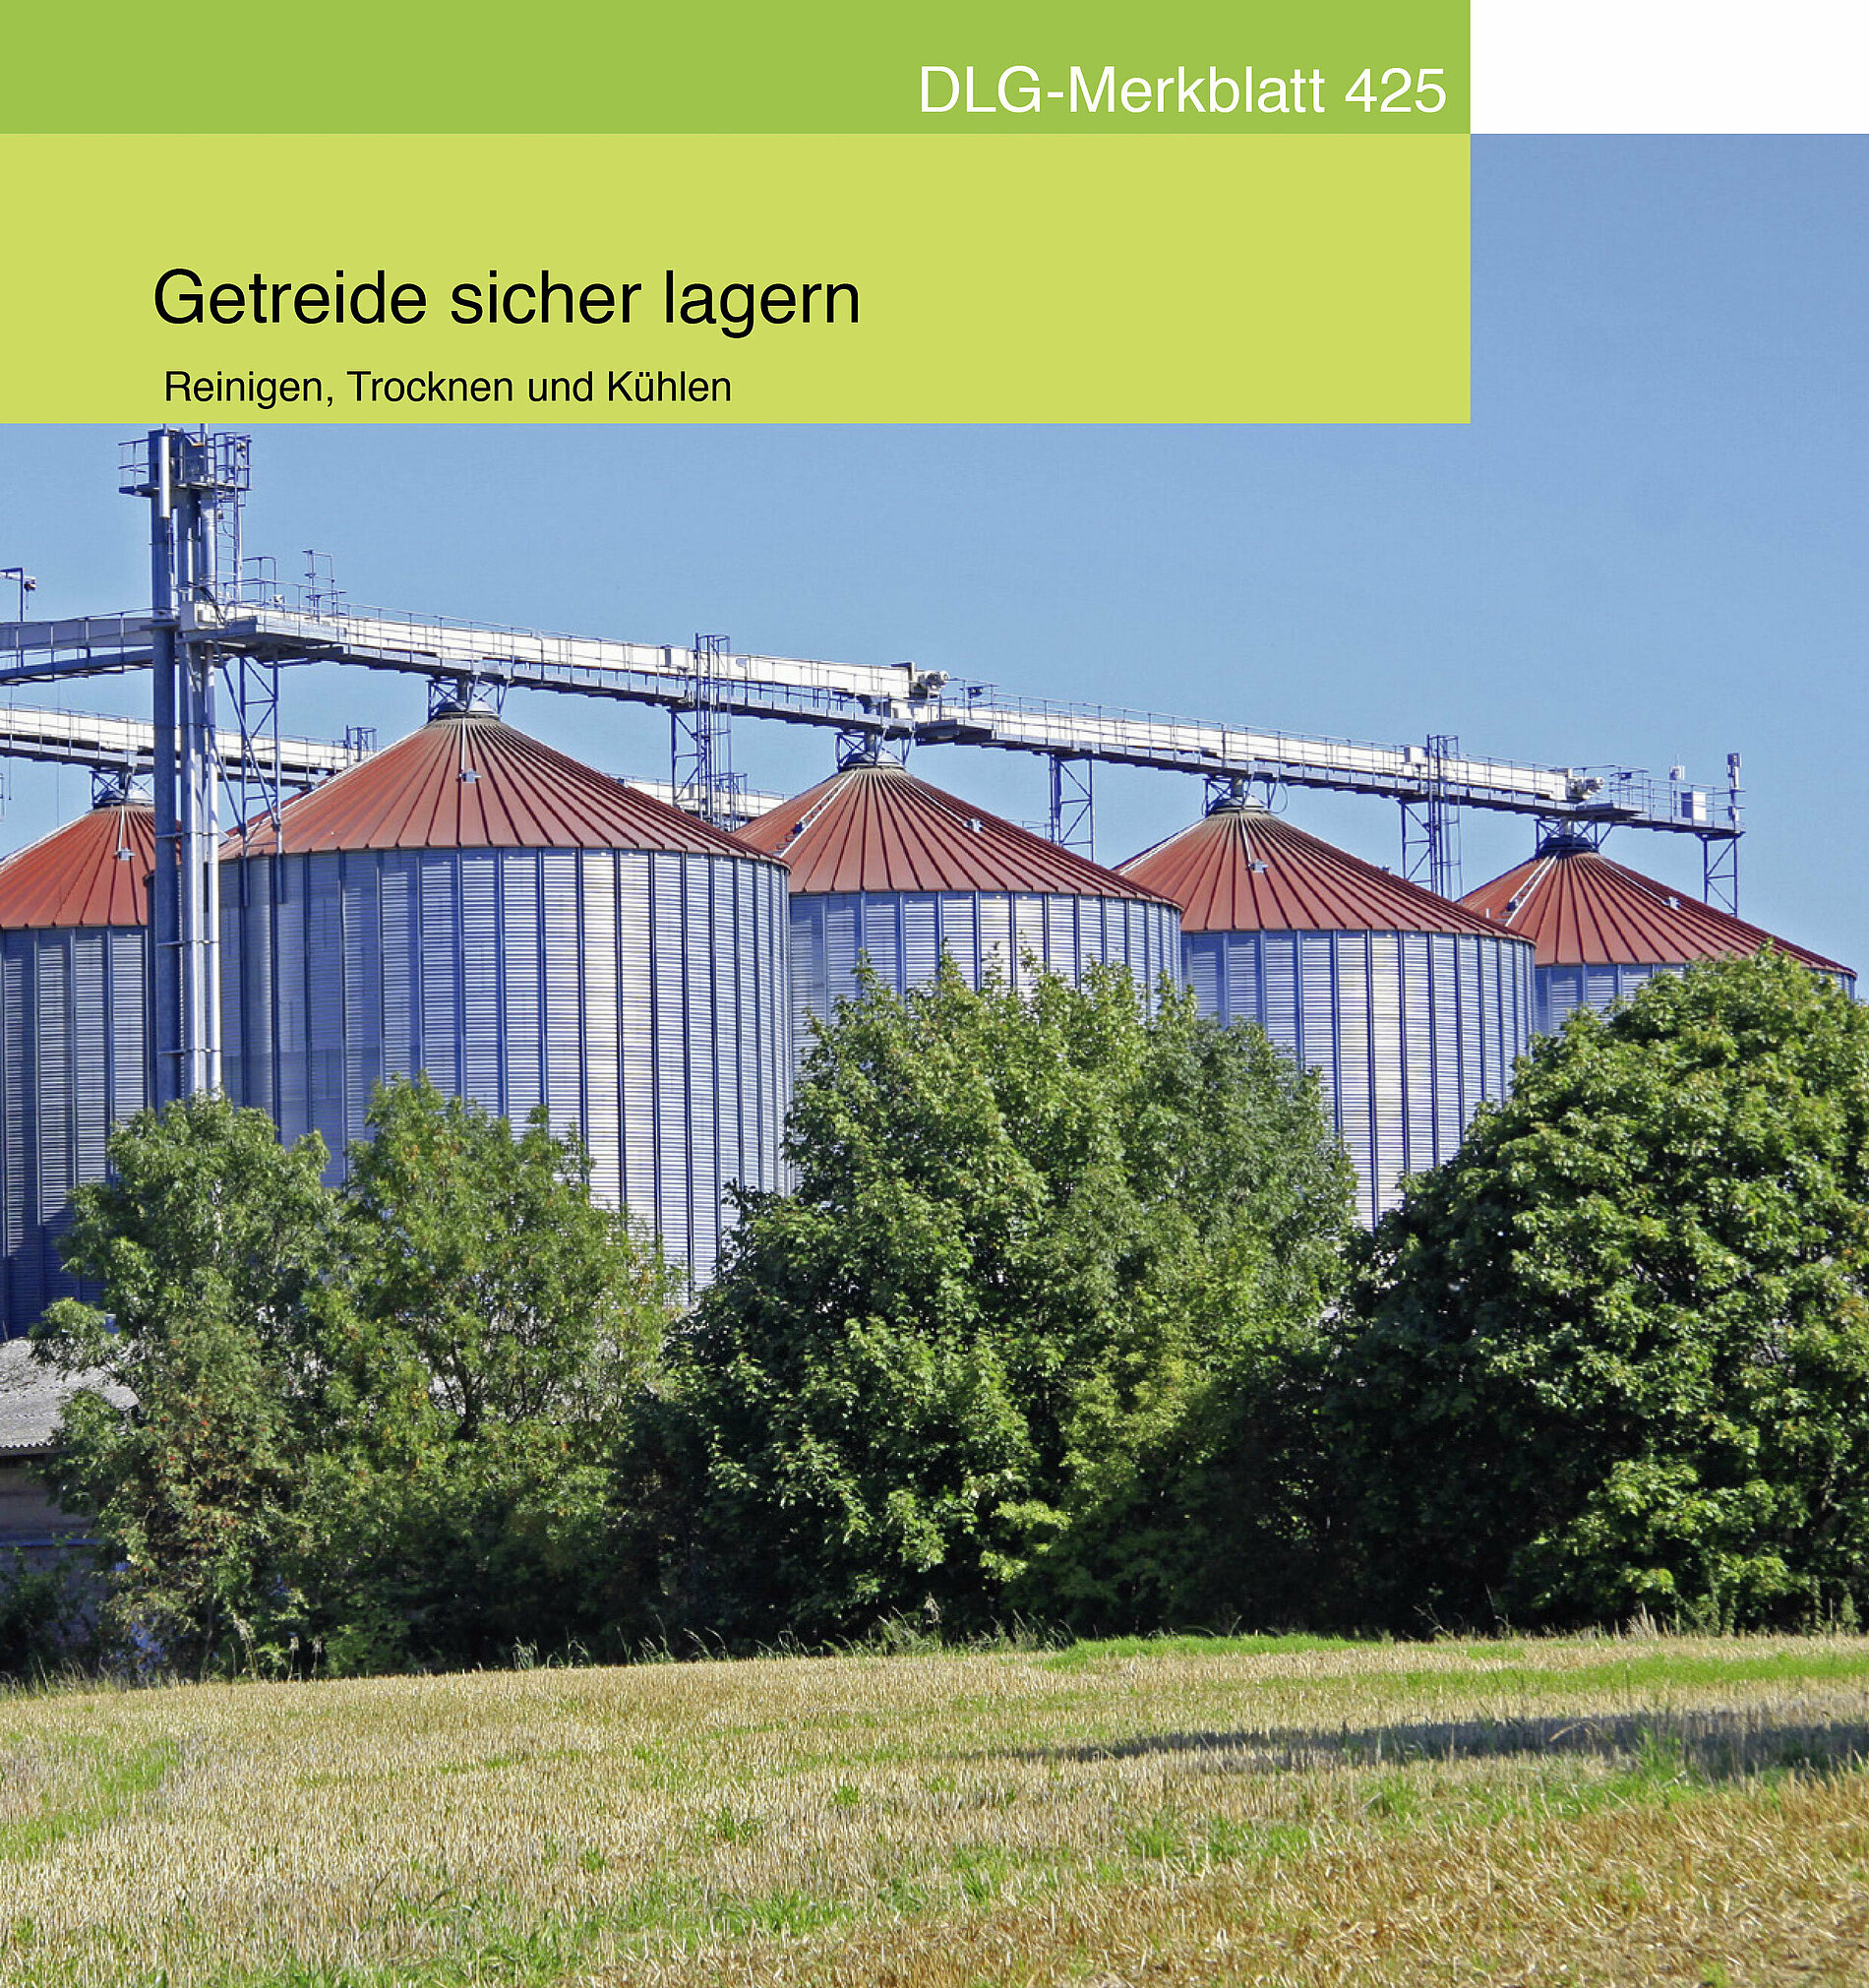 DLG-Merkblatt 425: Getreide sicher lagern - Reinigen, Trocknen und Kühlen